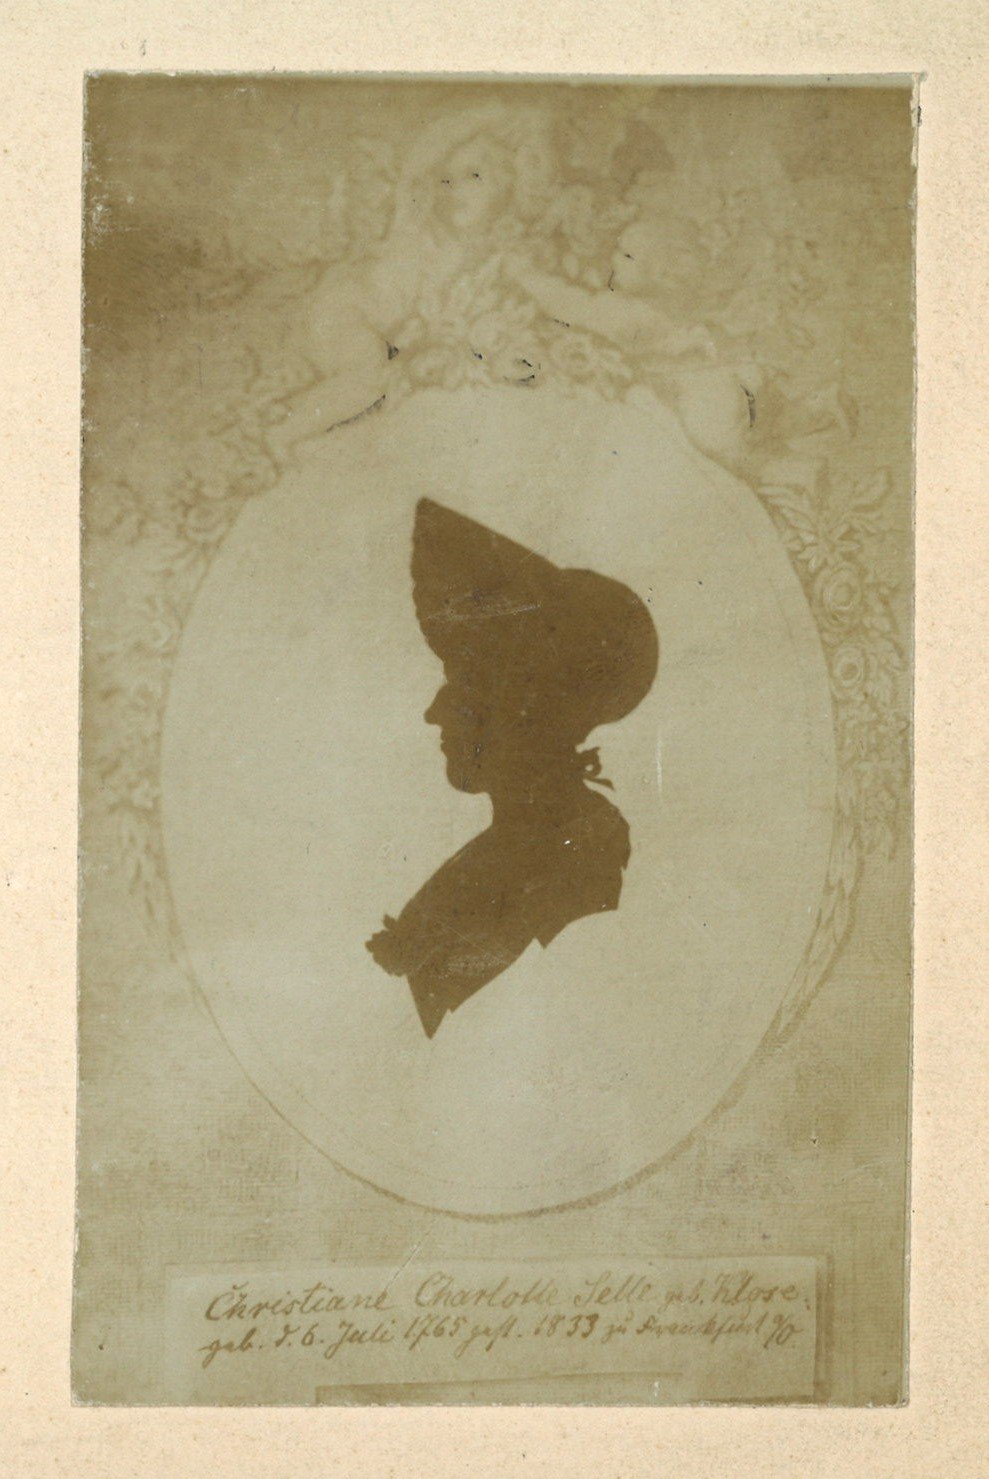 Selle, Christiane Charlotte, geb. Klose (1765-1833) (Scherenschnitt) (Landesgeschichtliche Vereinigung für die Mark Brandenburg e.V., Archiv CC BY)